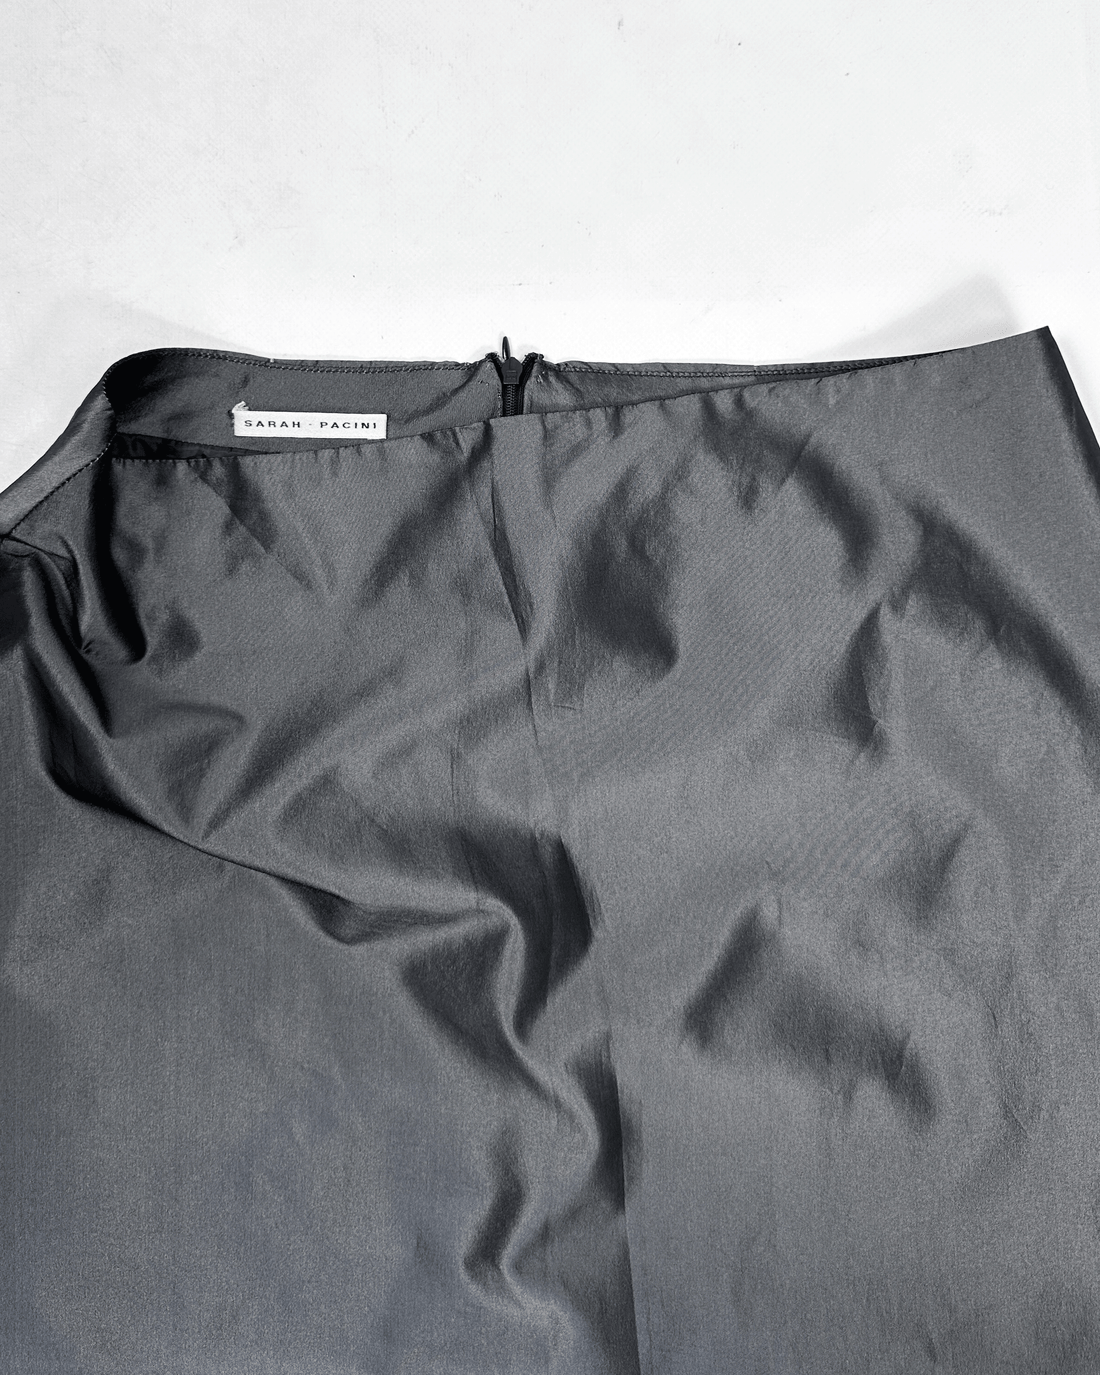 Sarah Paccini Metallic Grey Maxi Skirt 2000's